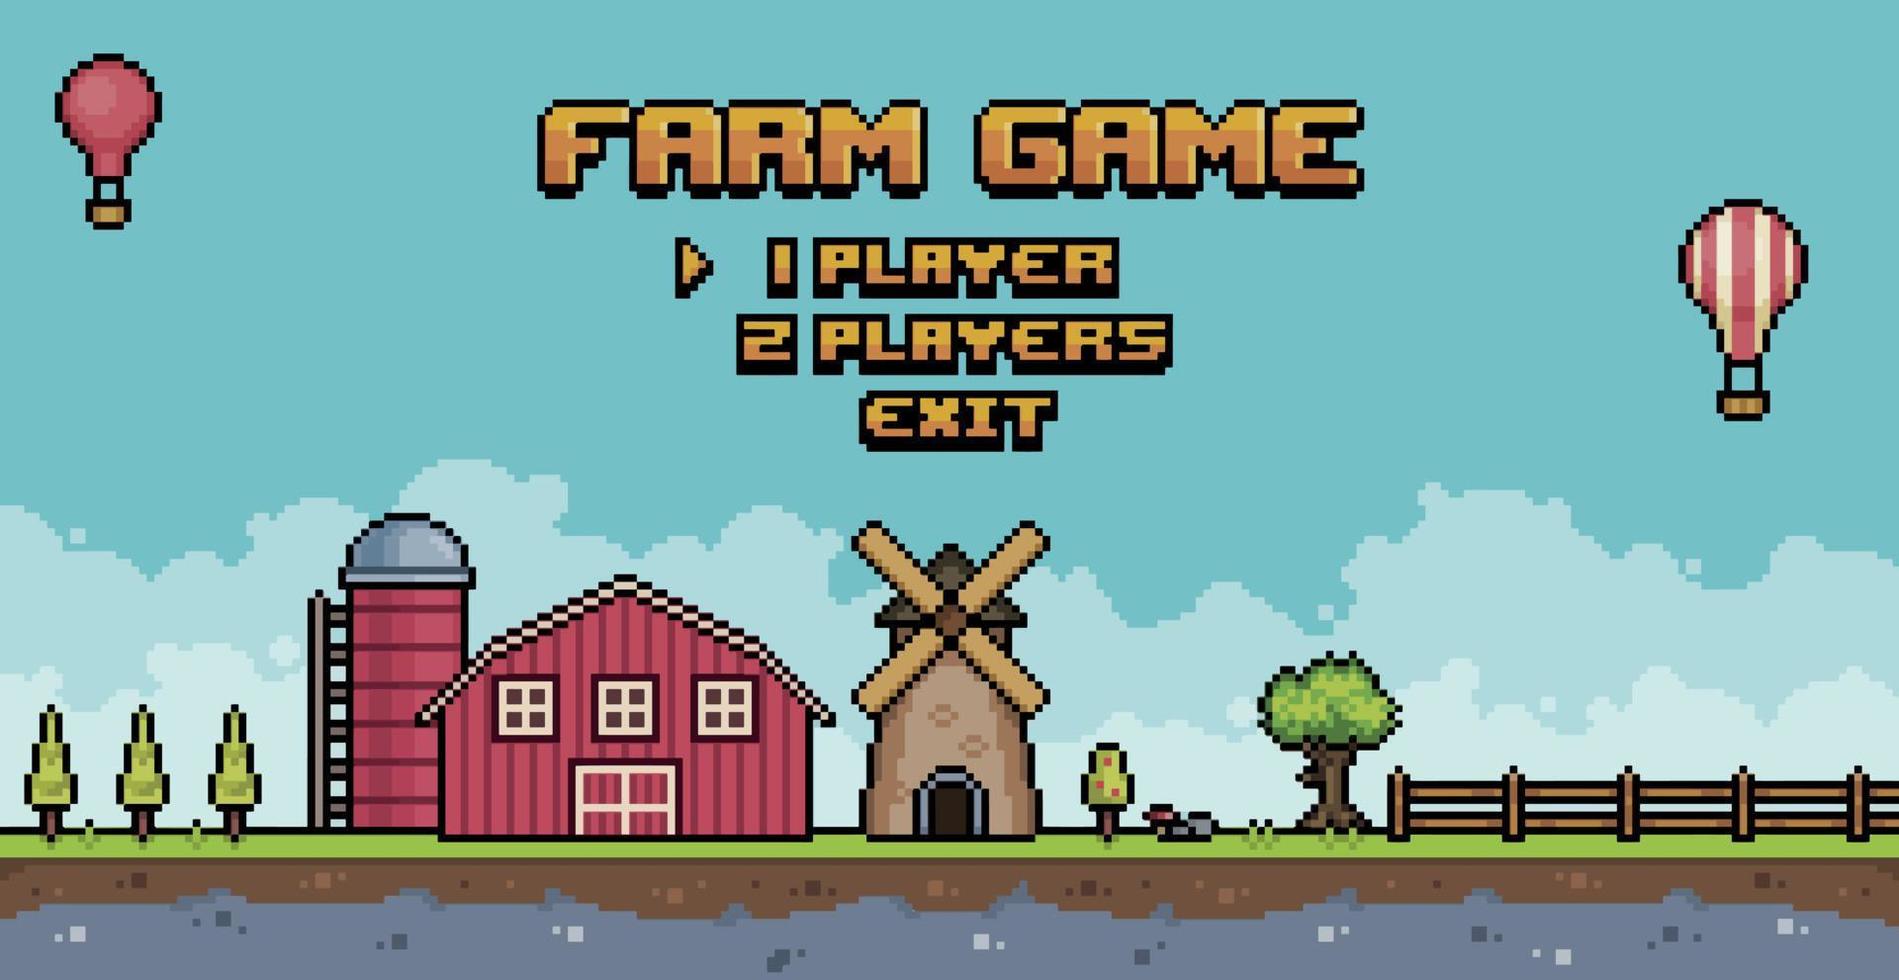 menu de jogo de fazenda de pixel art. paisagem da tela inicial do jogo de 8 bits com fundo de celeiro, moinho, silo vetor